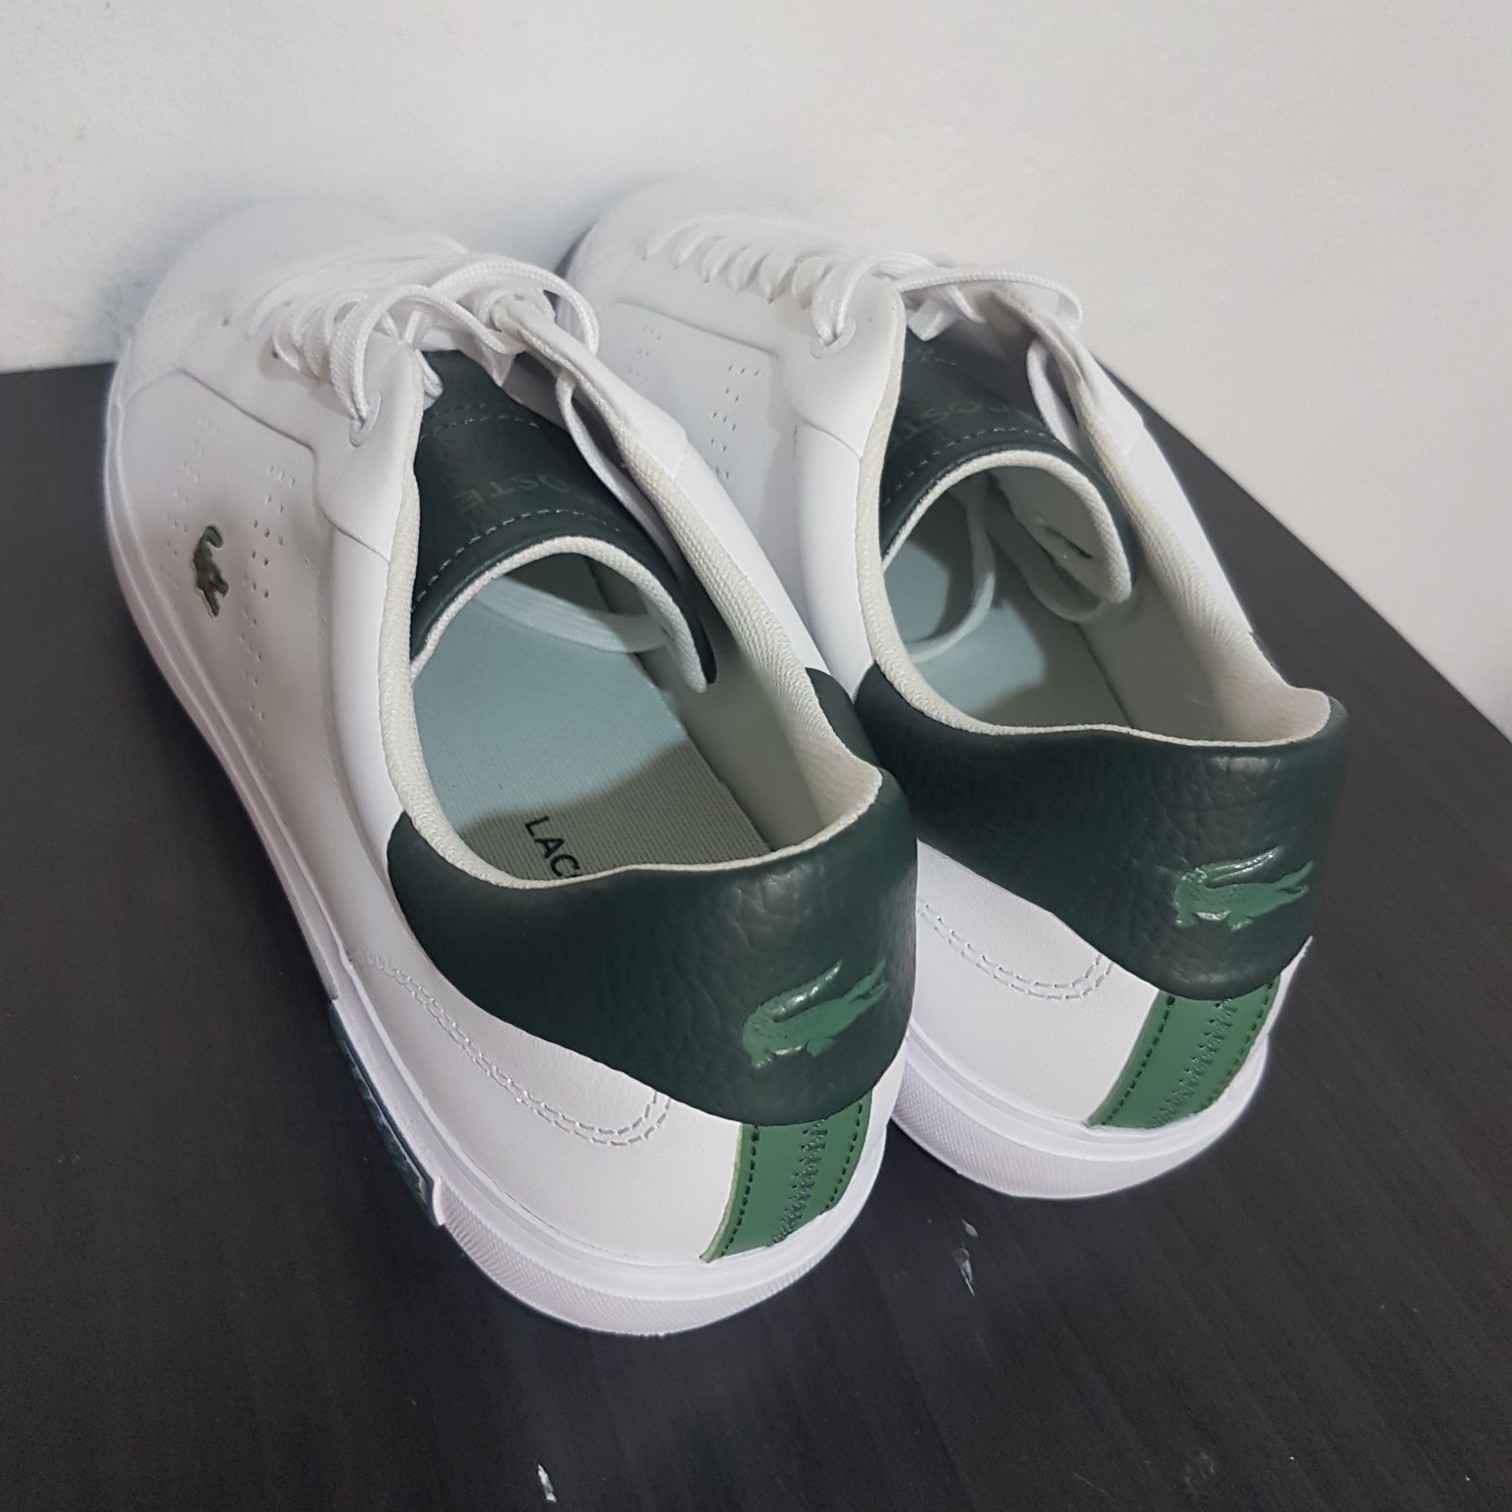 zapatos para hombre - Zapatos, Tenis, Convers, Lacoste, Blanco, verde, hombre.